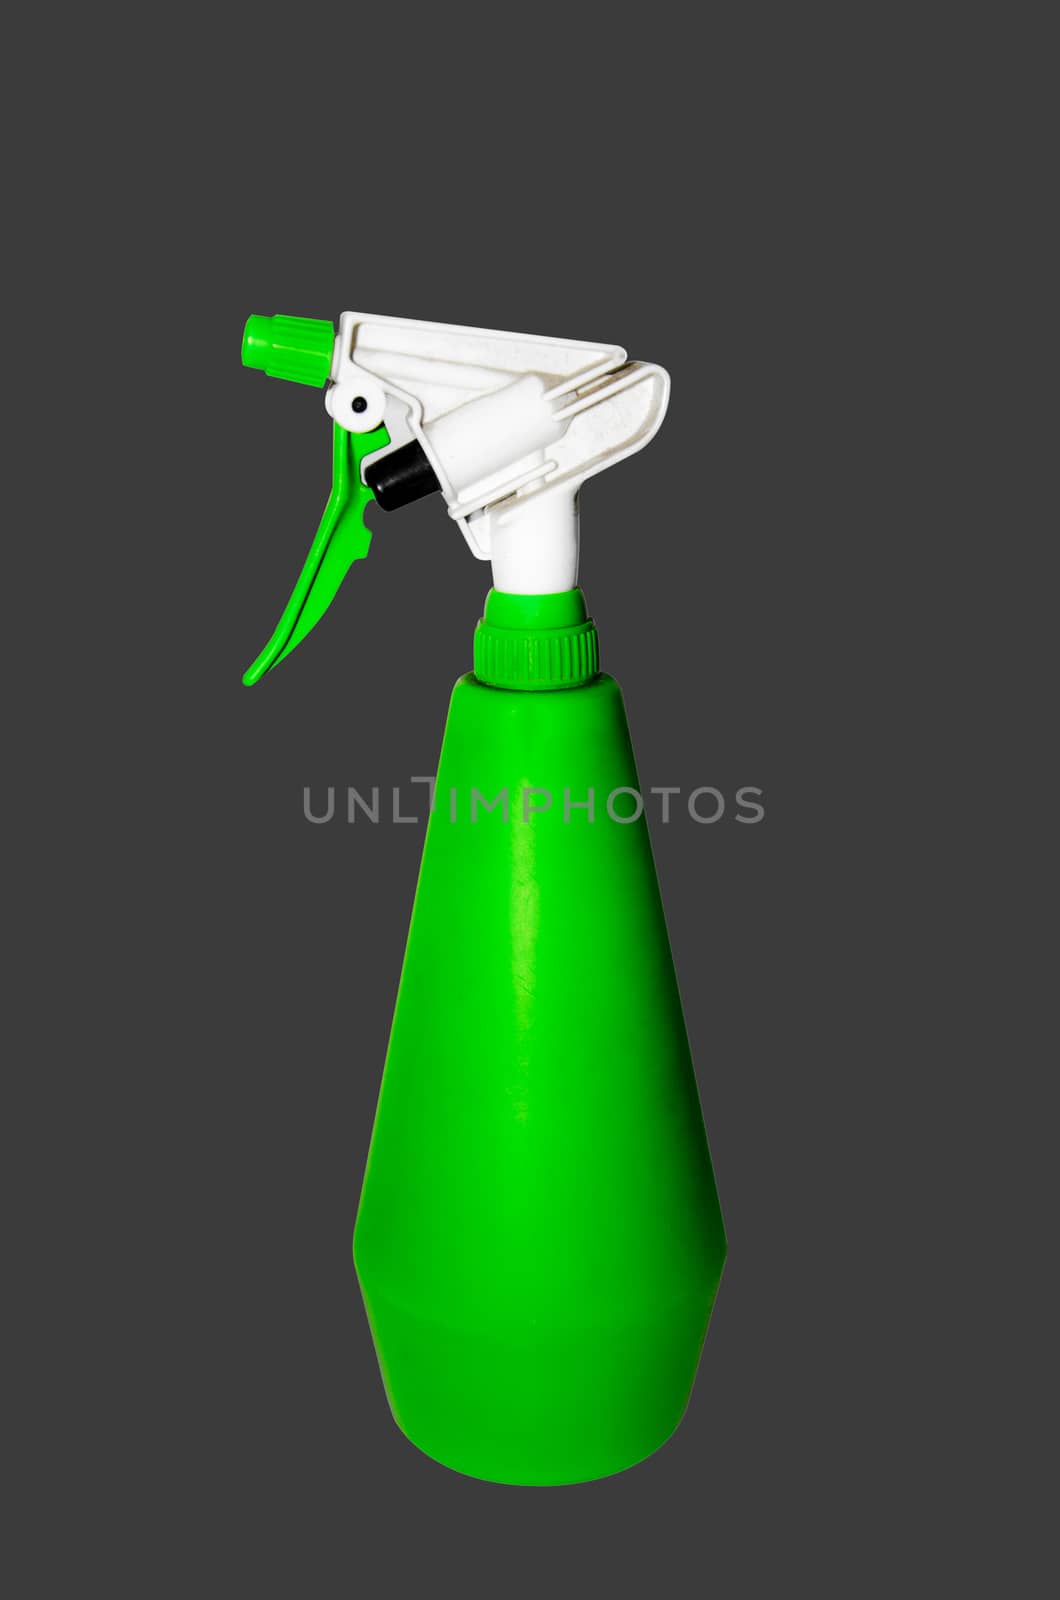 green spray